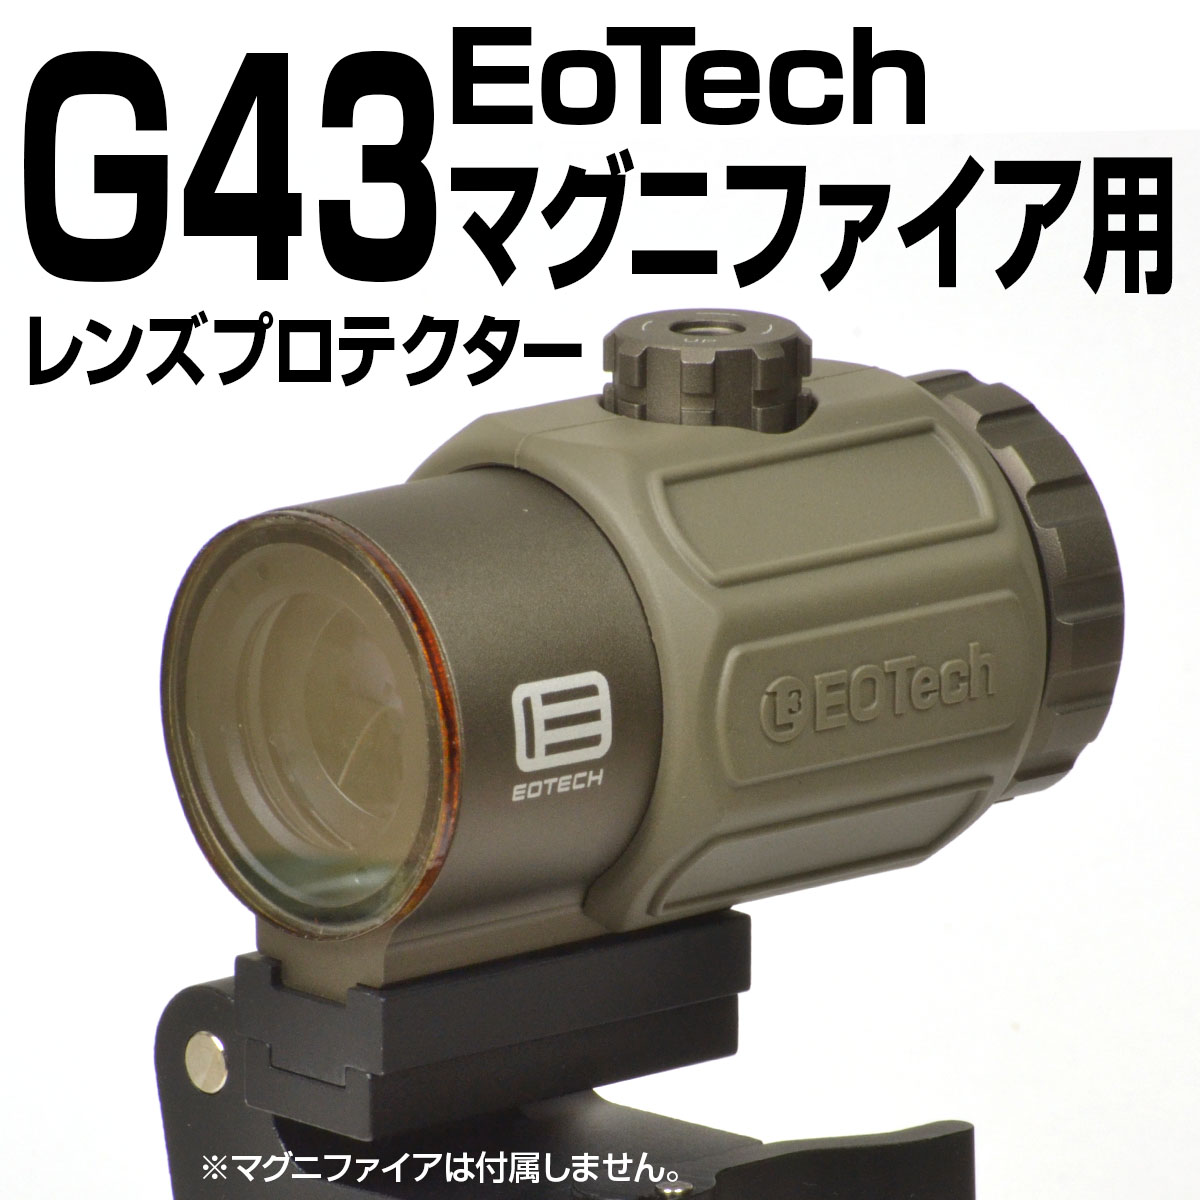 EoTech G43マグニファイア用プロテクター | あきゅらぼ通販